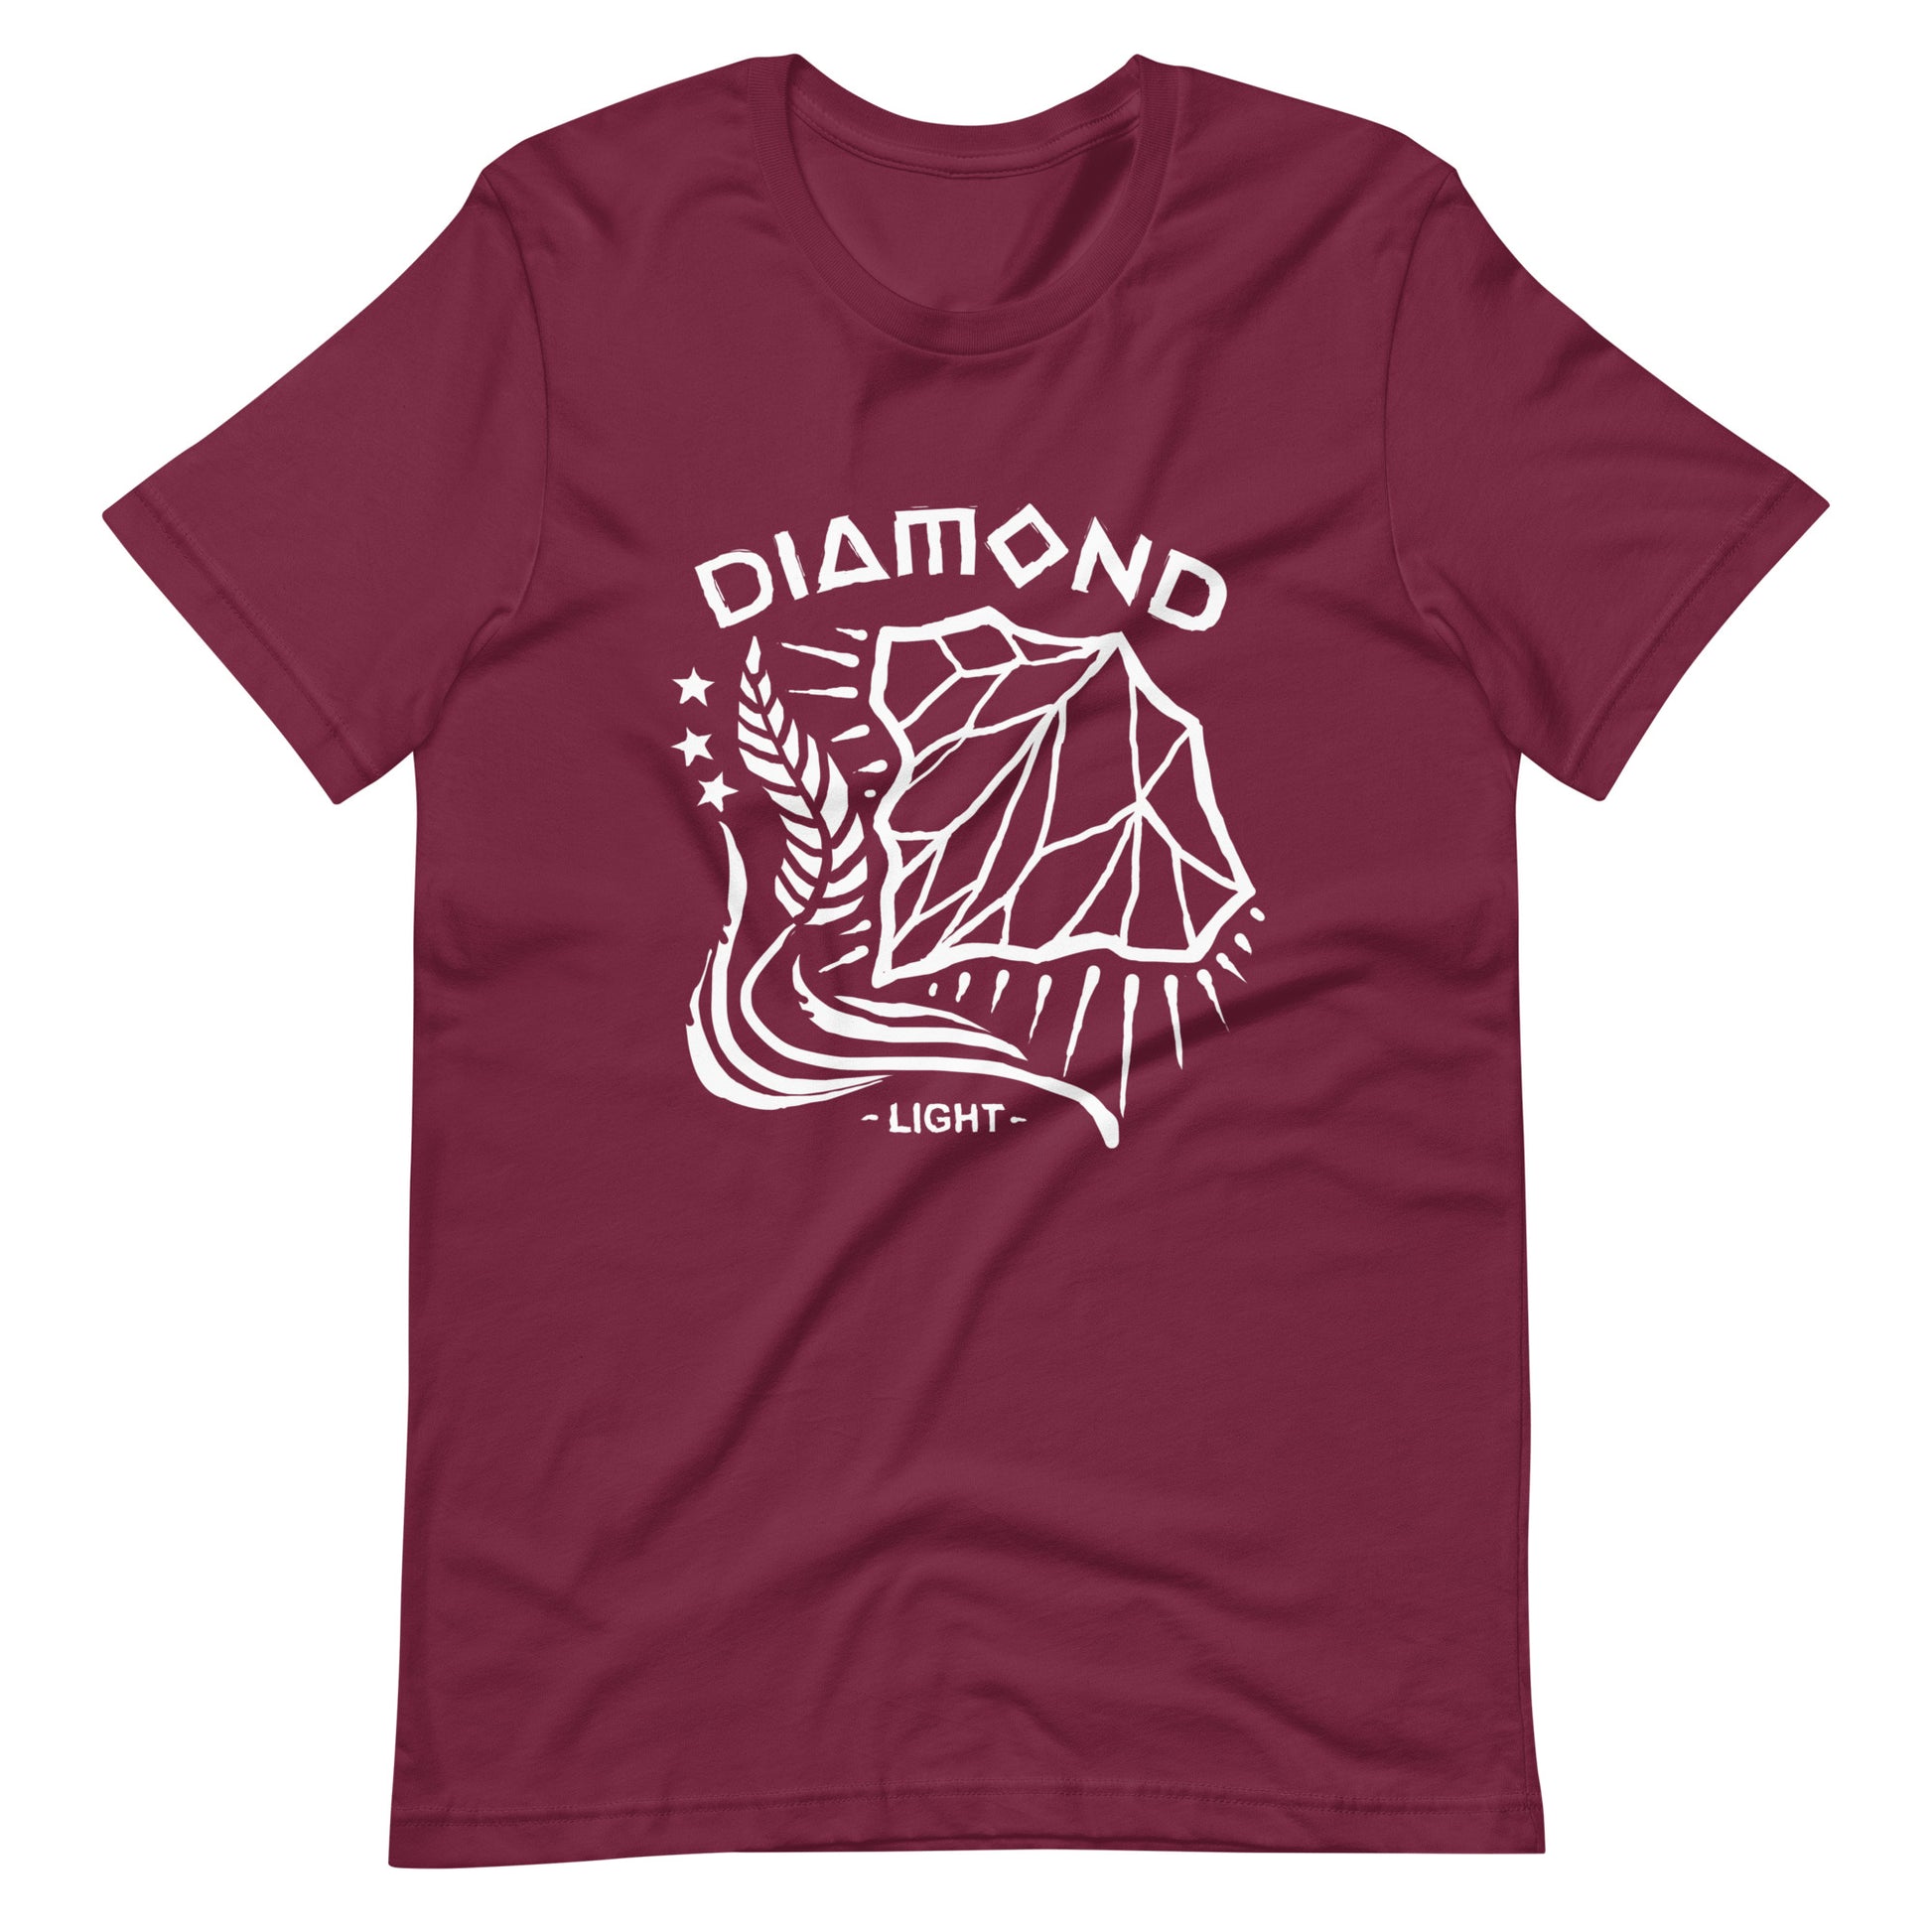 Diamond Light - Men's t-shirt - Maroon Front